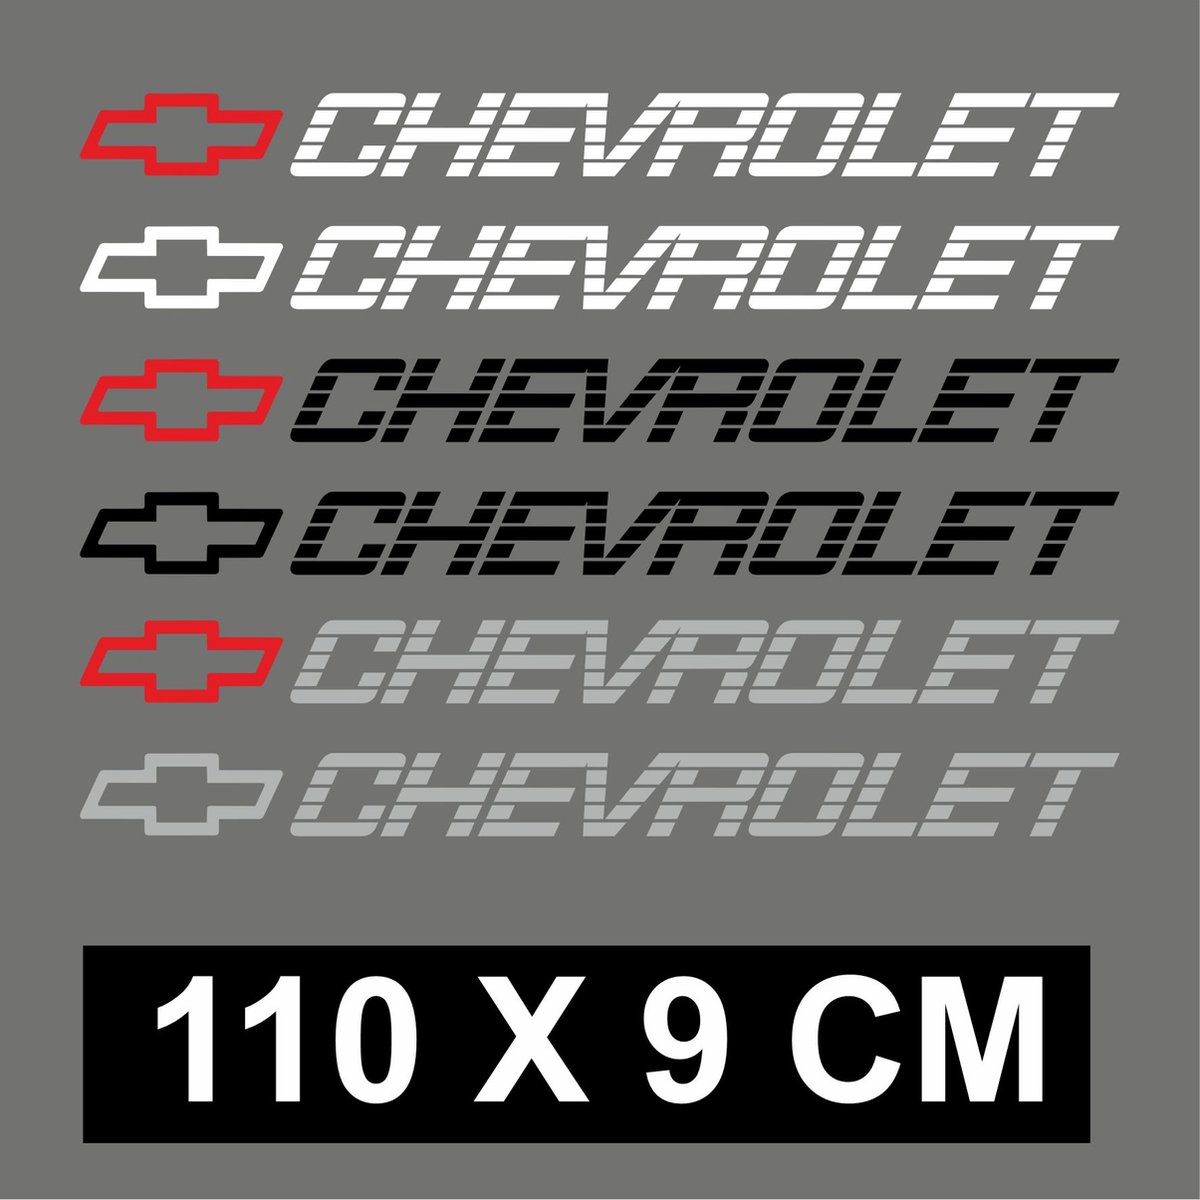 Chevrolet Pickup tailgate sticker met chevy logo 110x9cm - witte tekst en rood logo